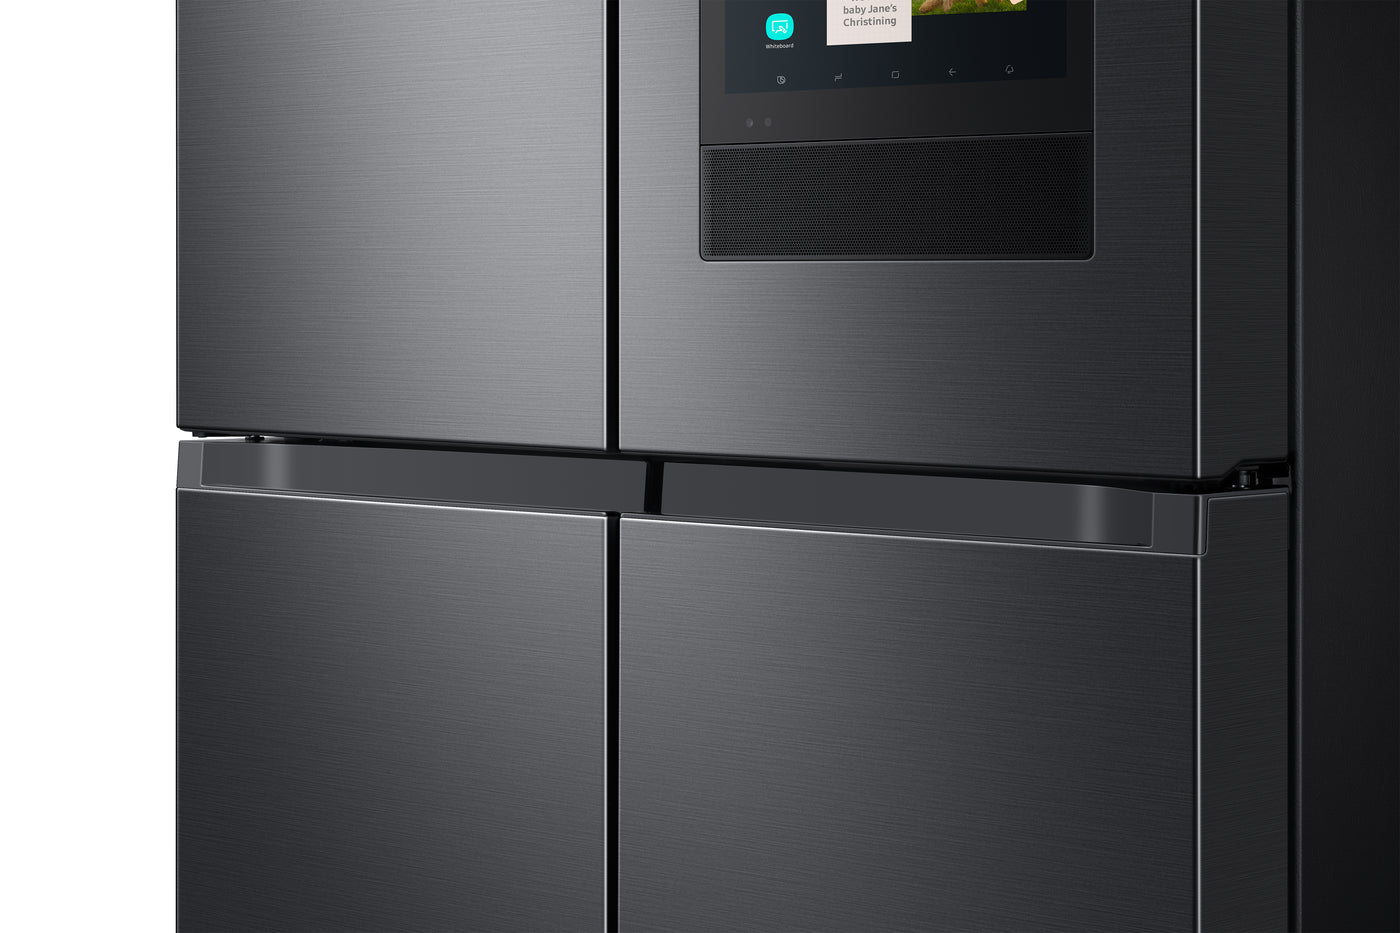 Réfrigérateur Samsung de 25 pi³ à 4 portes avec machine à glaçons